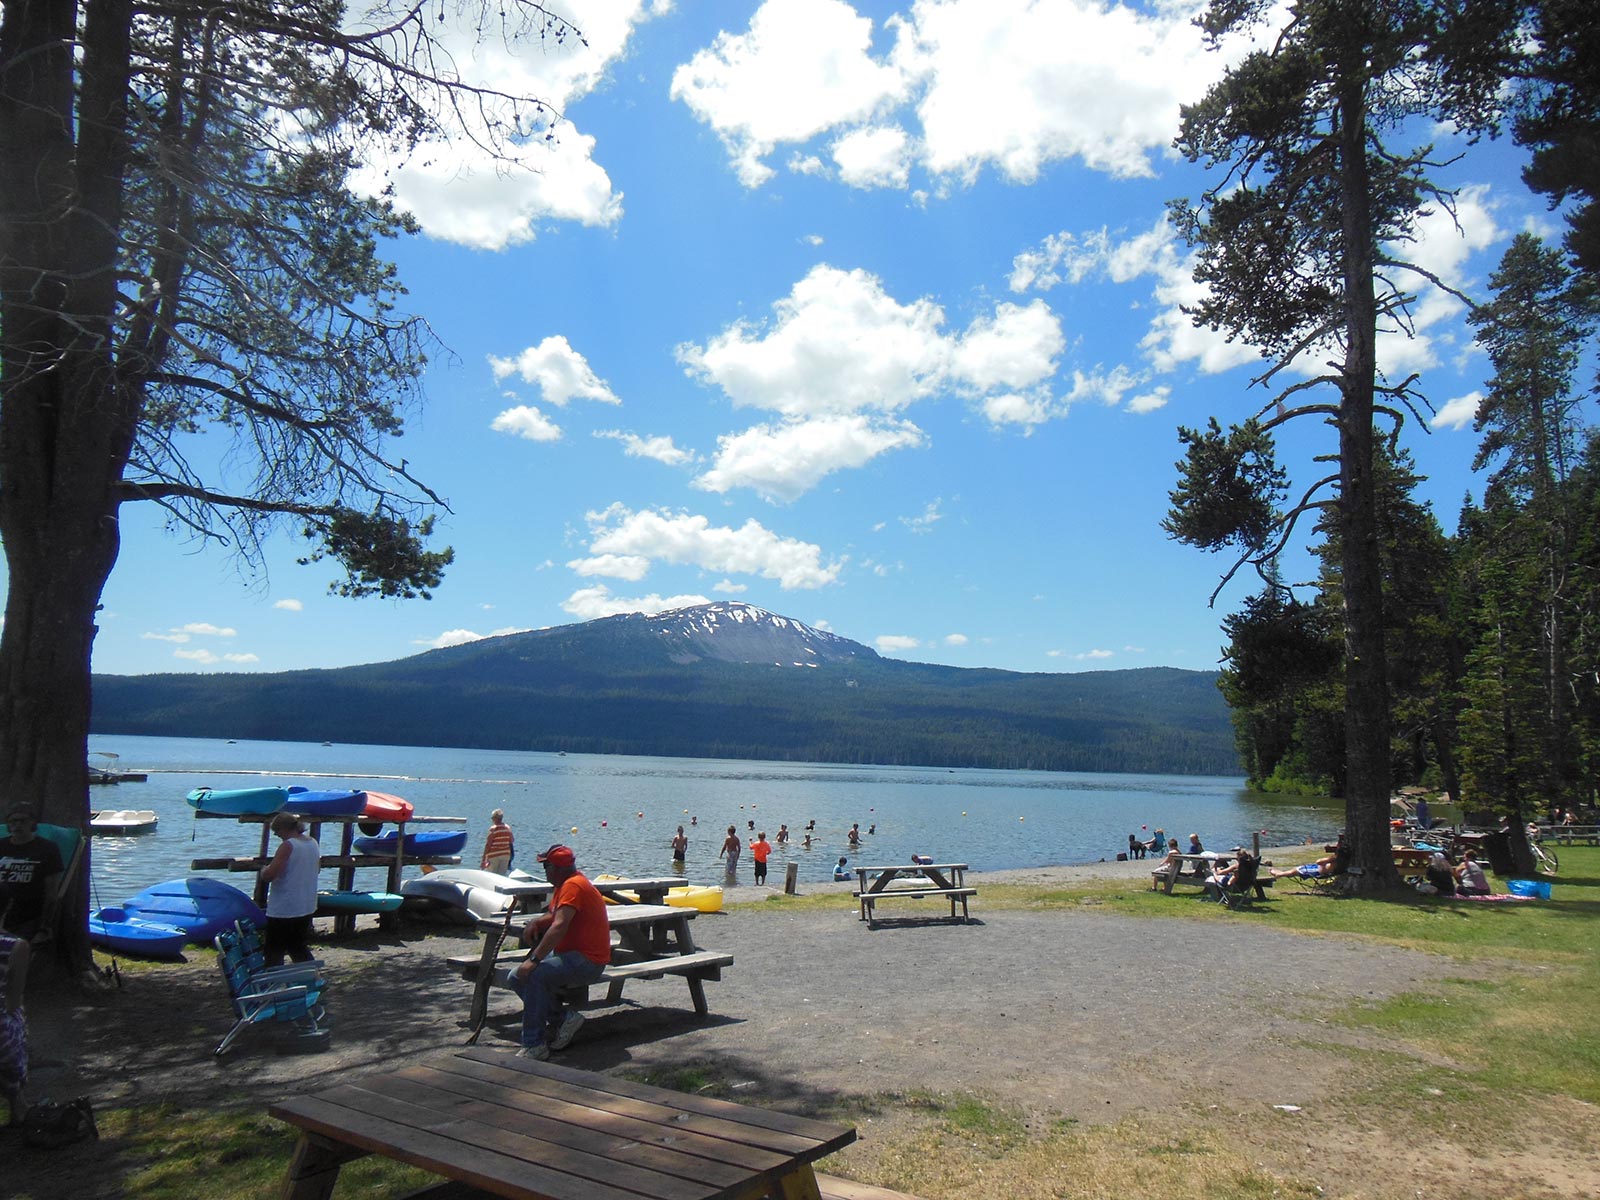 A summer day at Diamond Lake Resort